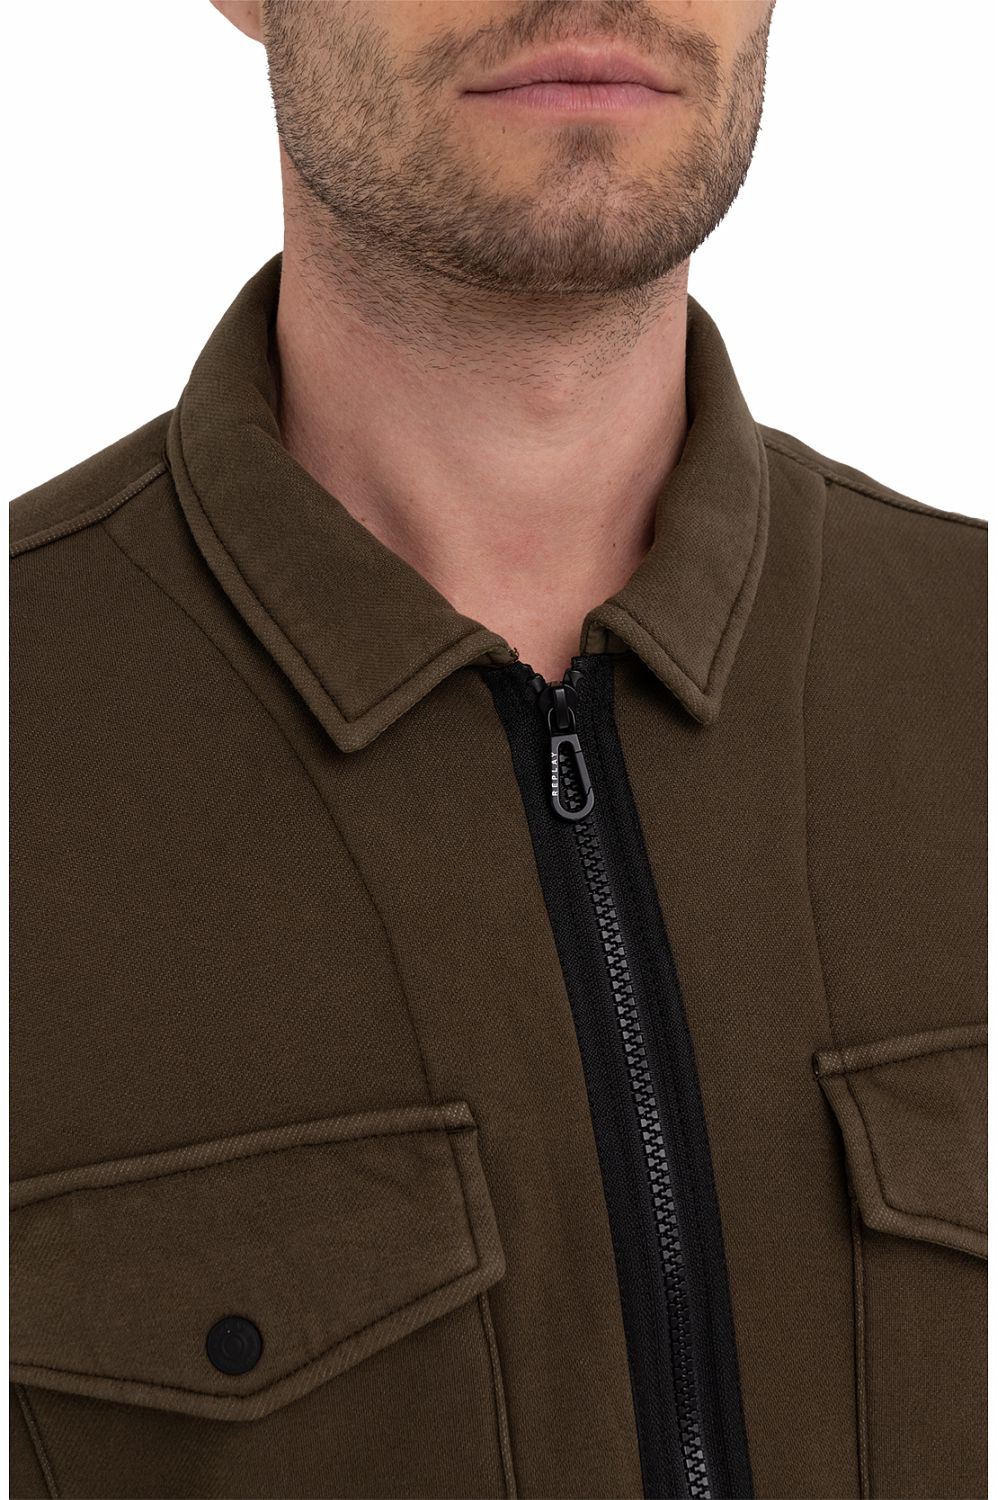 Fleece Shirt With Zipper